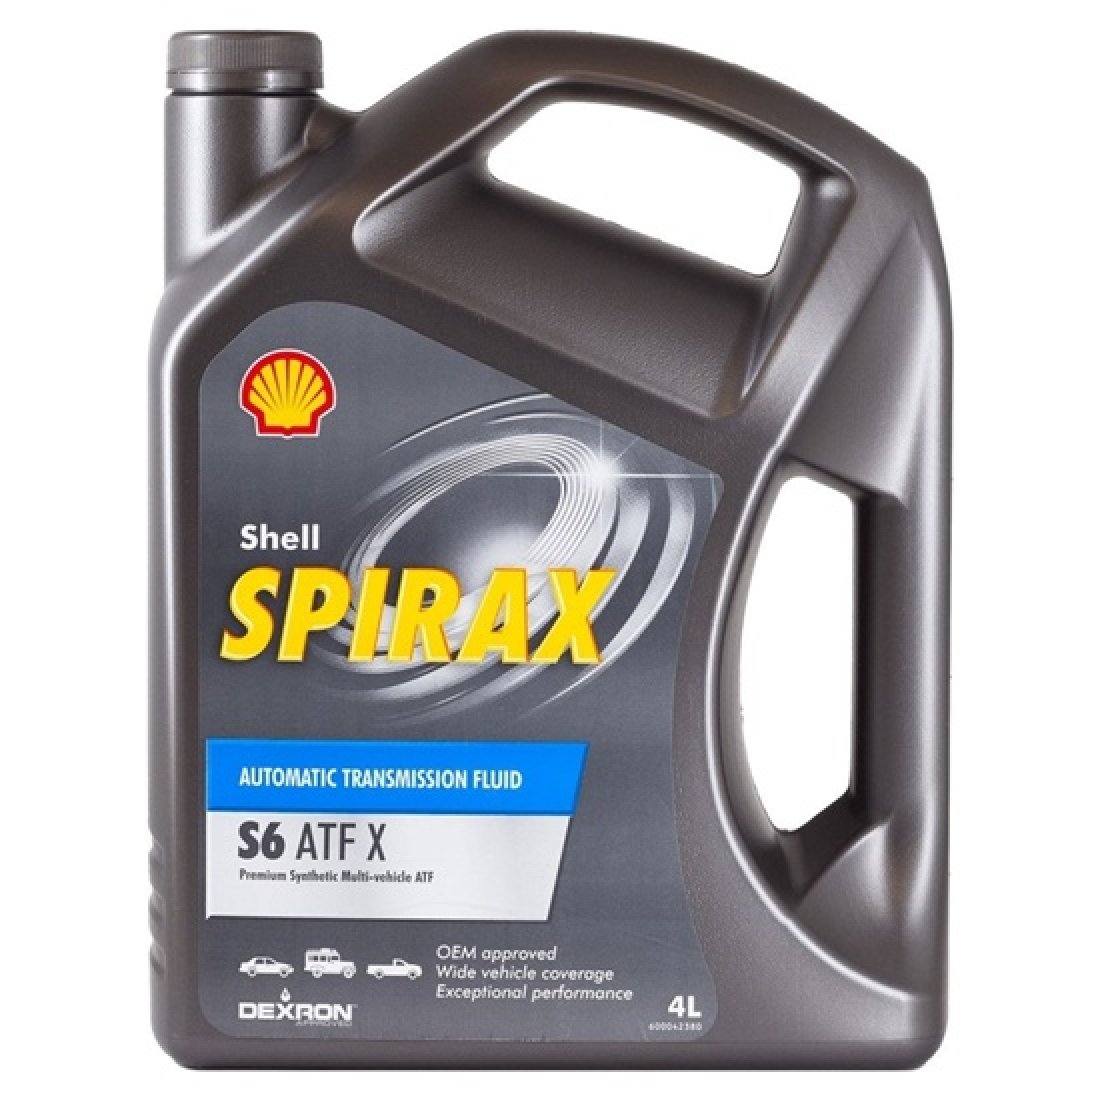 Shell spirax atf x. Spirax s6 ATF X. Shell Spirax s6 ATF X. Shell Spirax s6 ATF ZM. 550048808 - Shell Spirax s6 ATF X 4l.